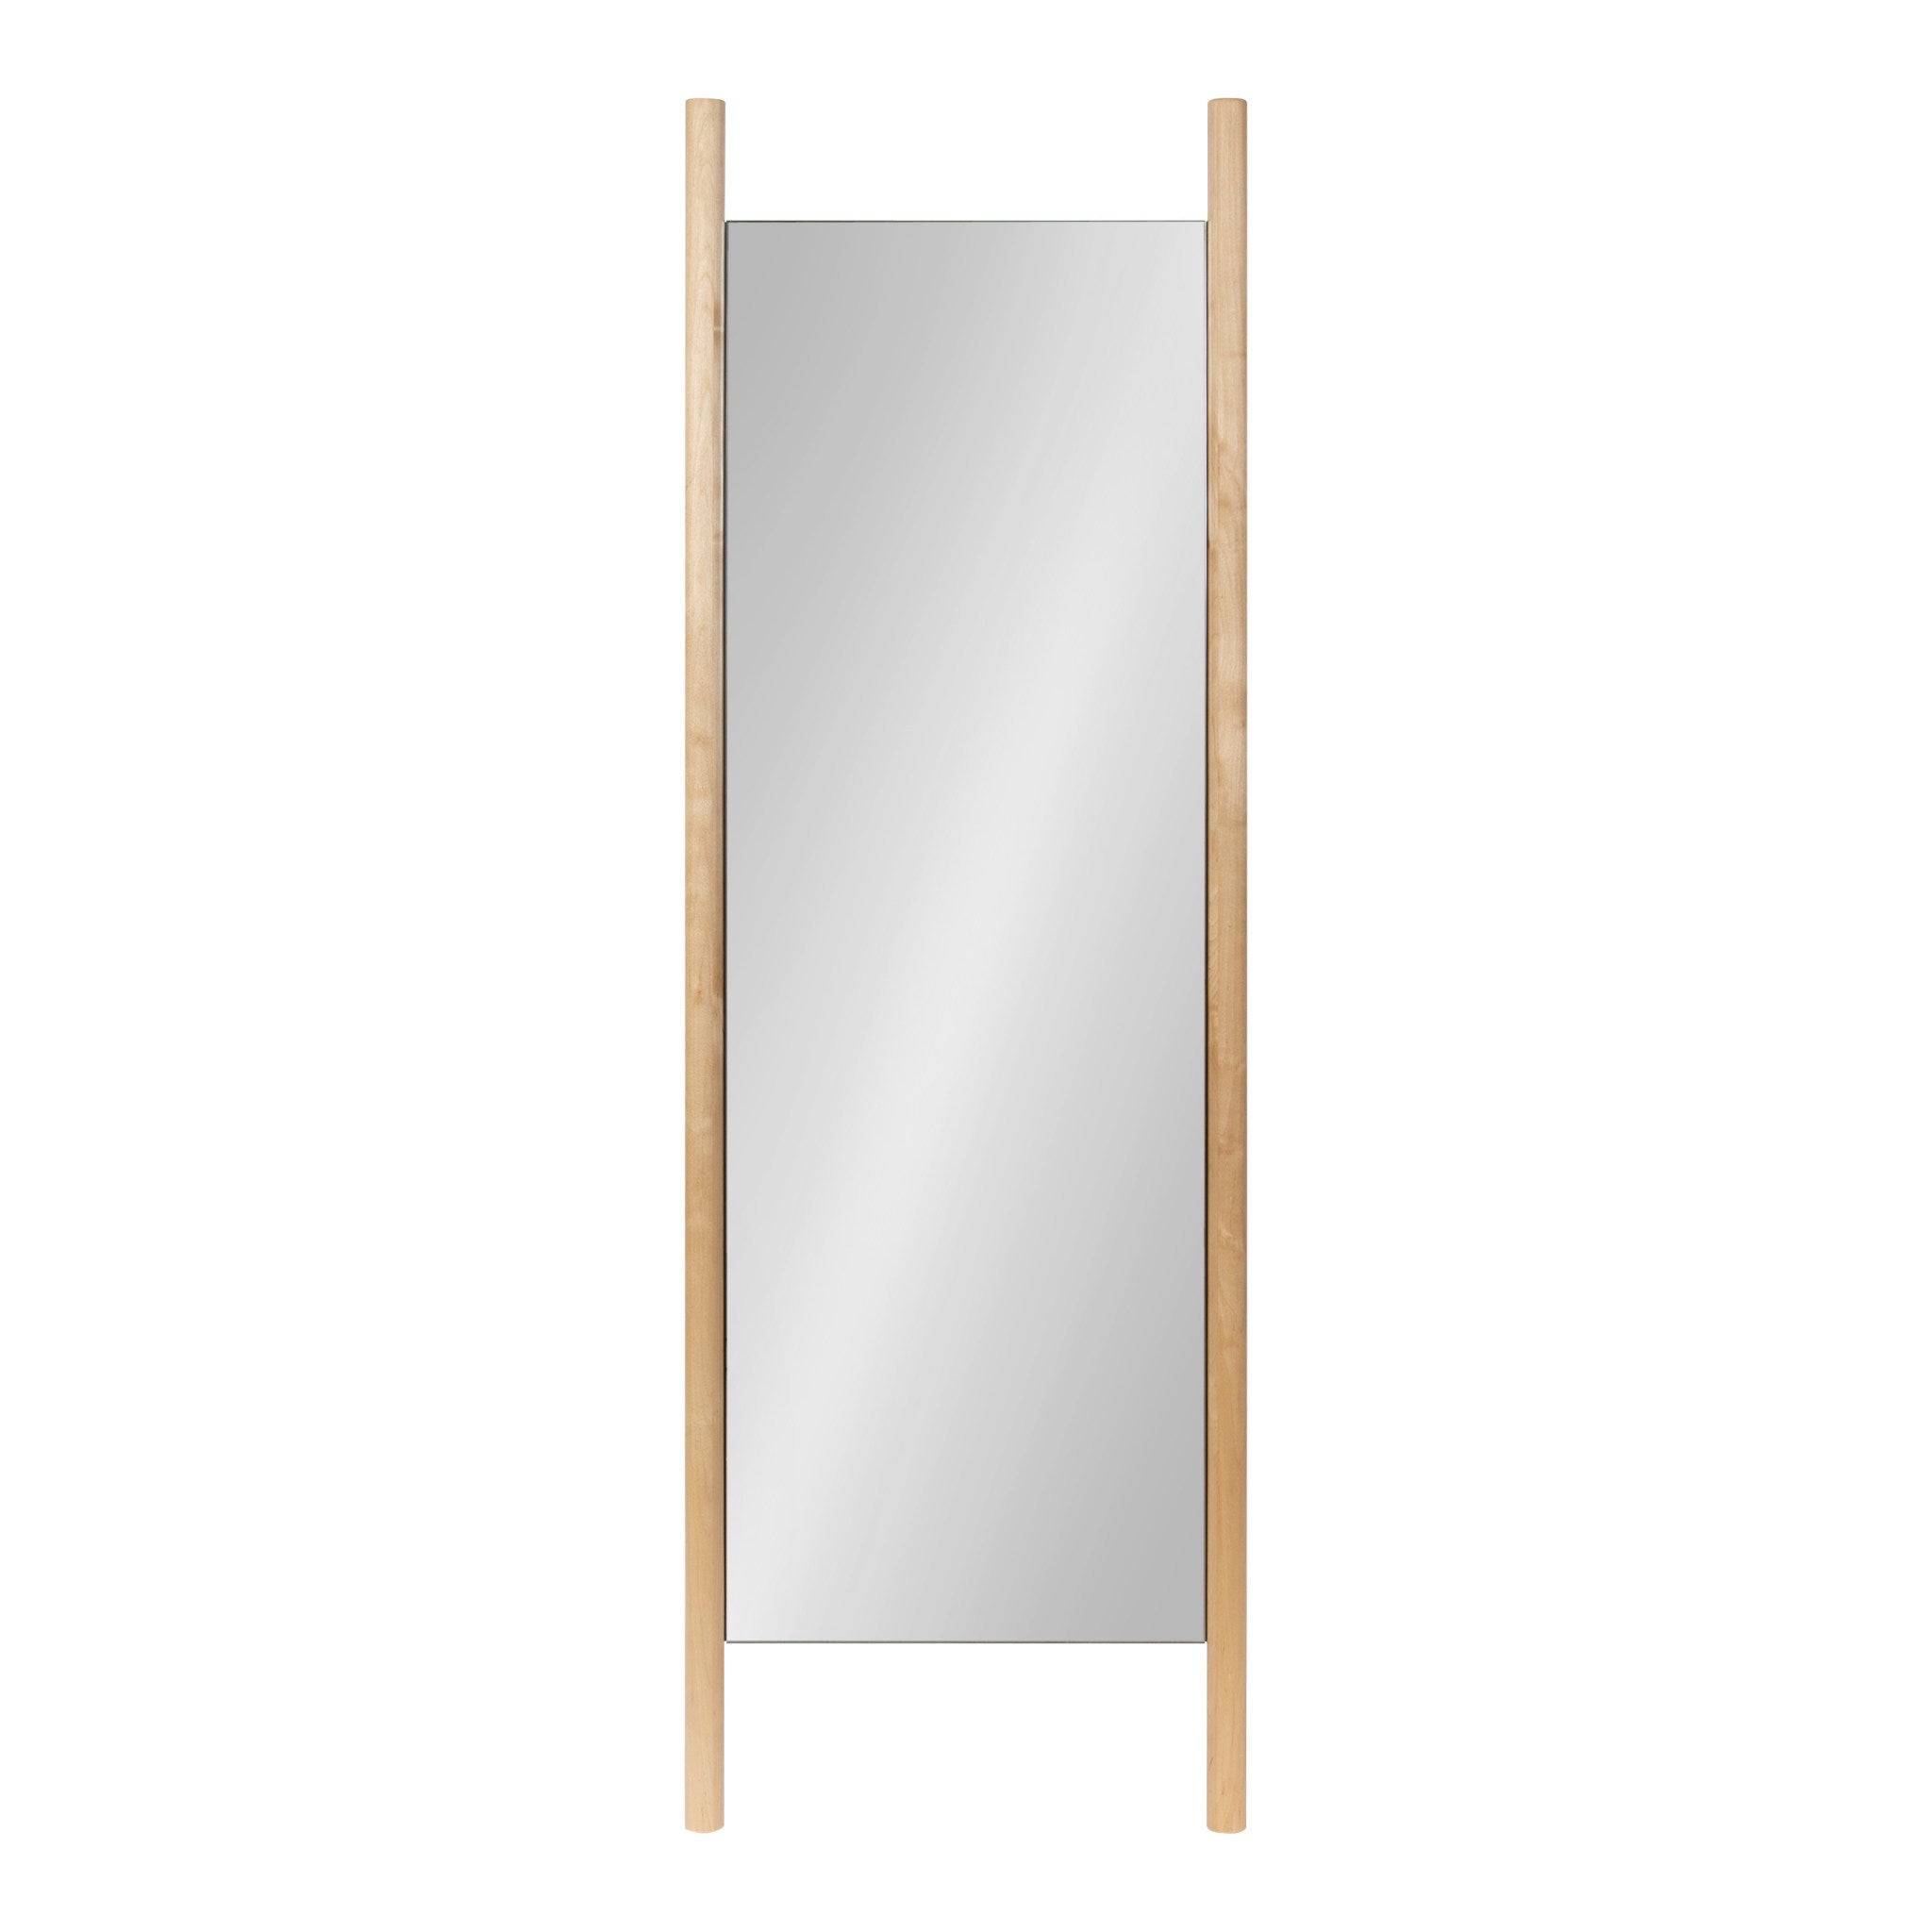 Findlay Wood Wall Leaner Mirror